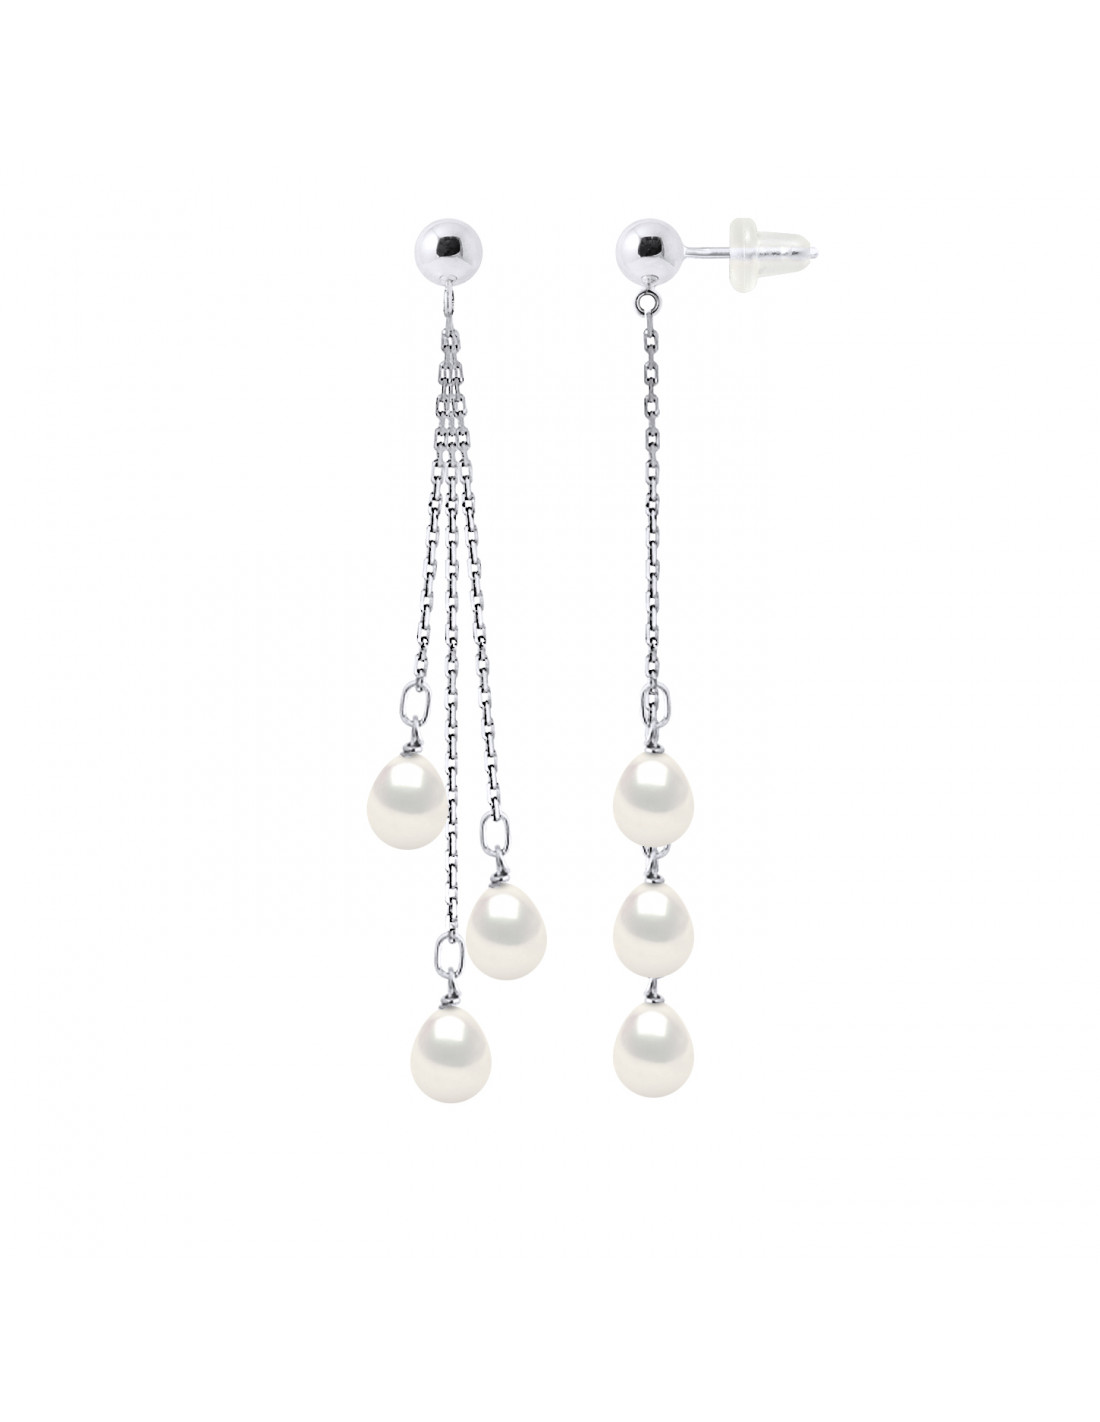 Boucles d'Oreilles Pendantes Perles 7-8 mm - Plusieurs Coloris - Argent 925  - BANDOL